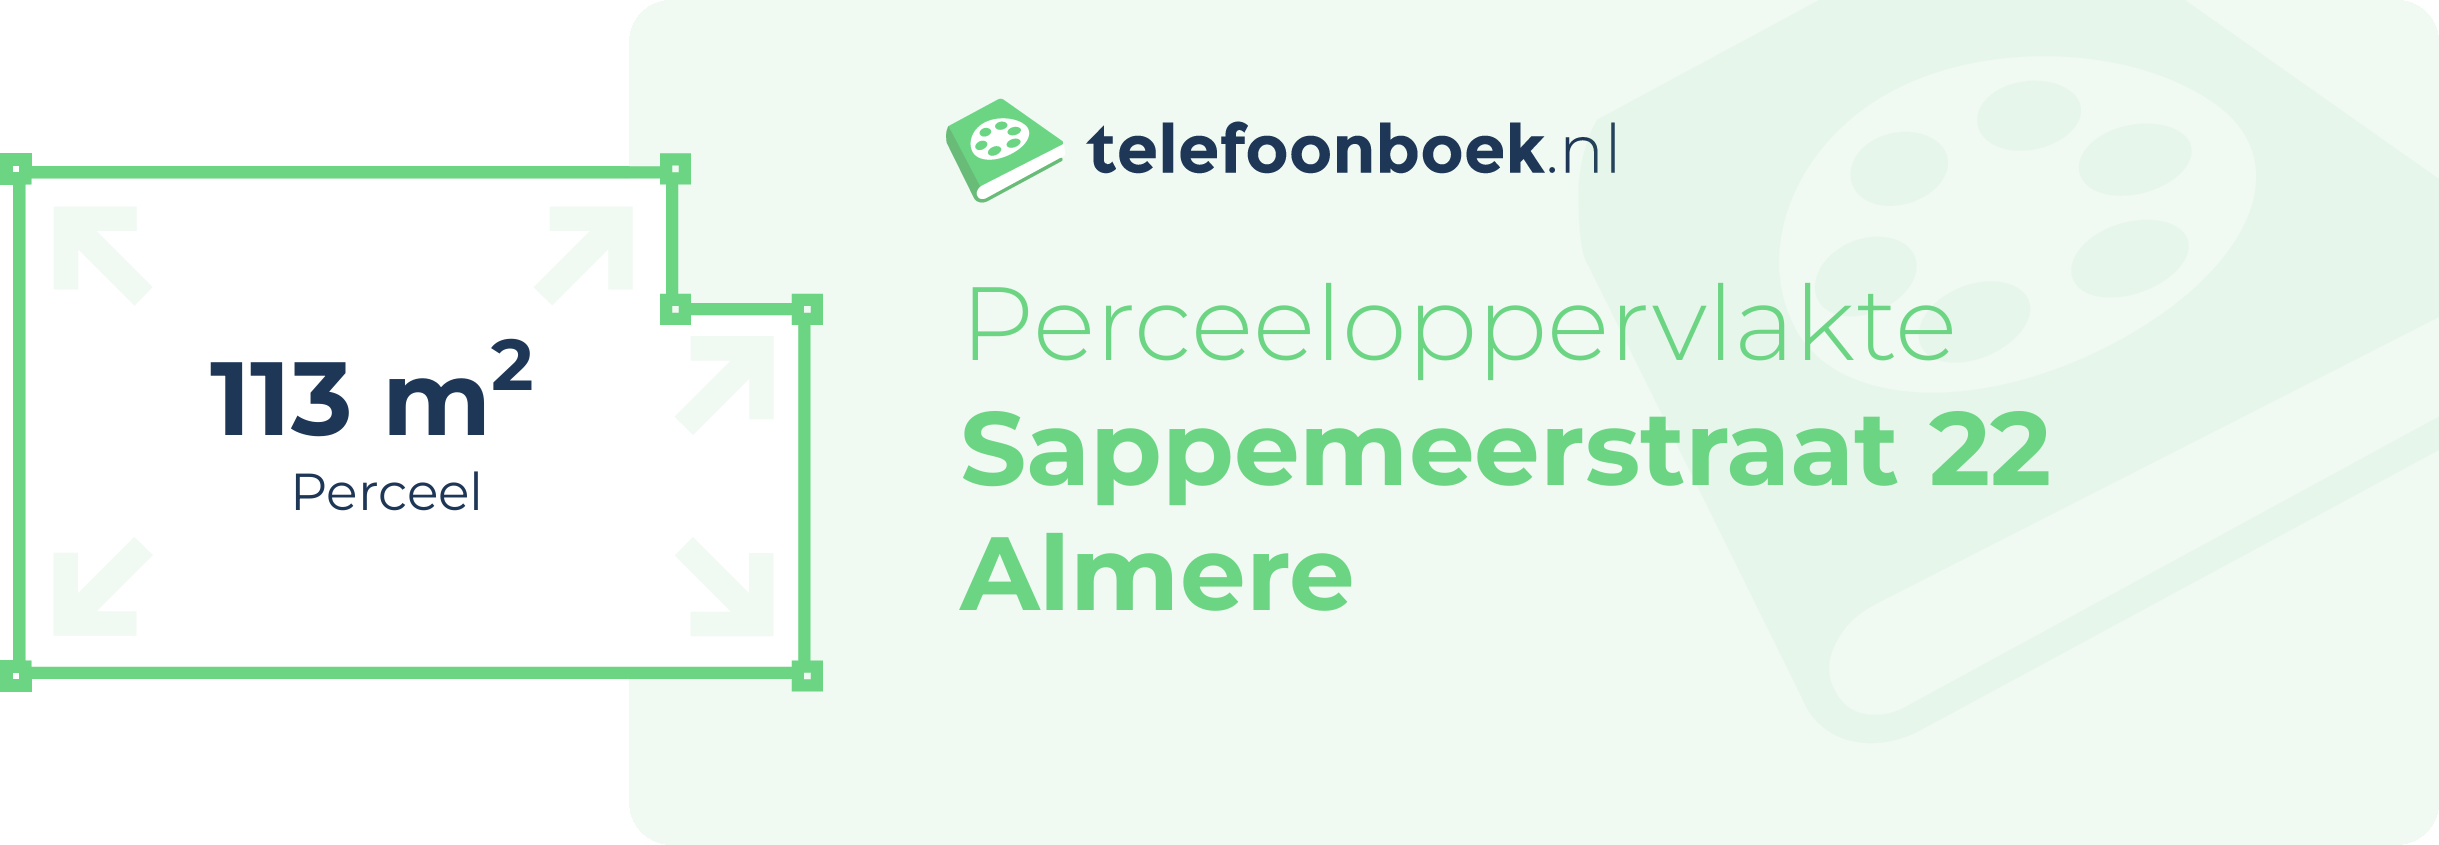 Perceeloppervlakte Sappemeerstraat 22 Almere